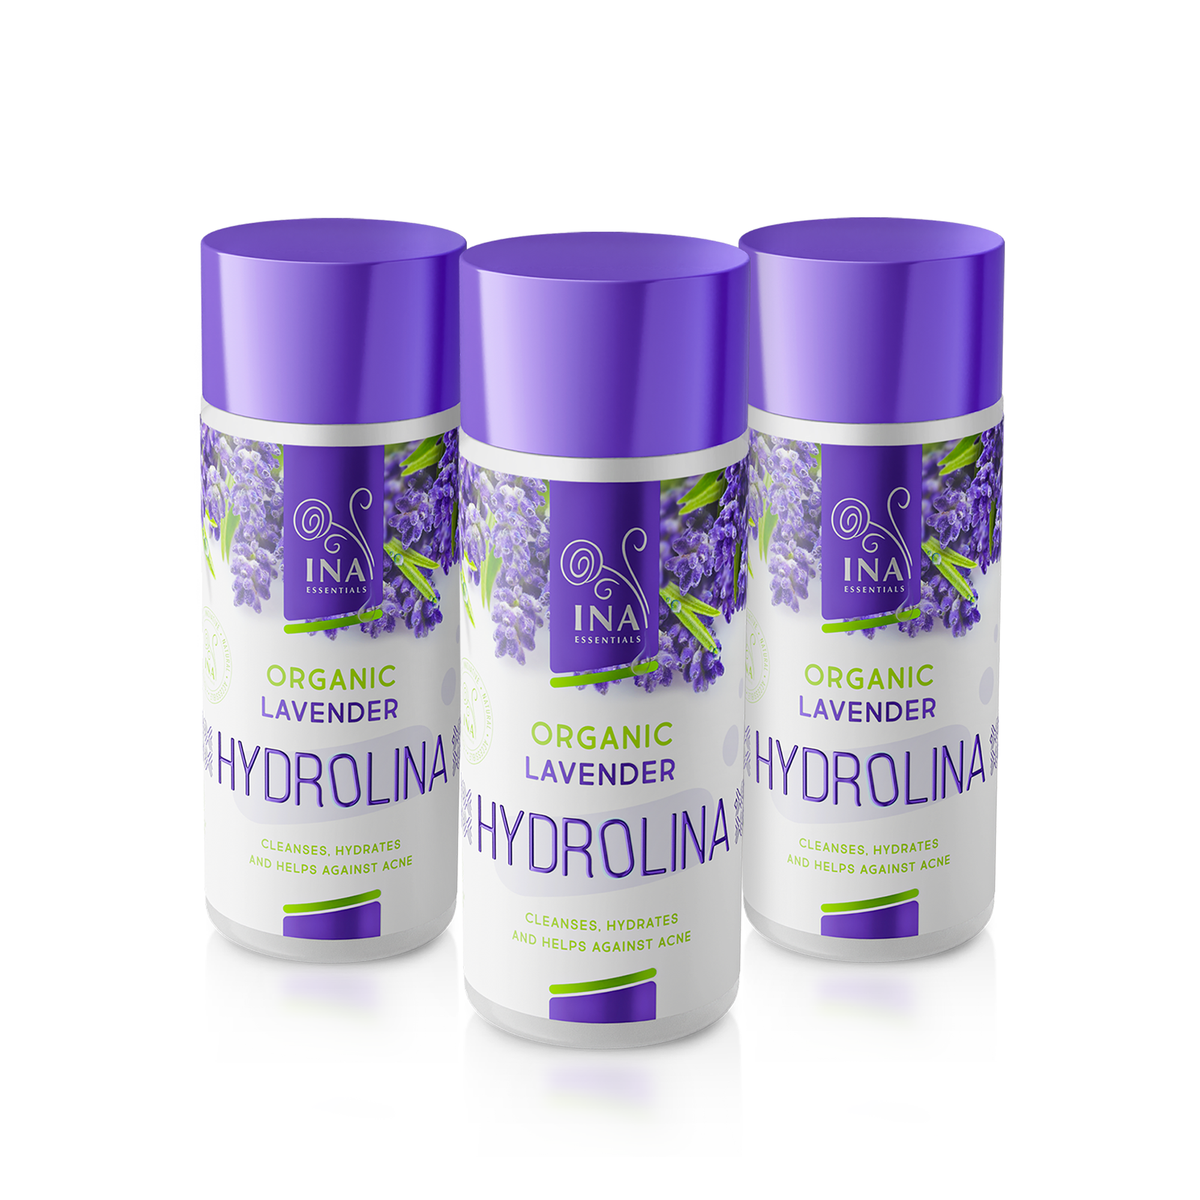 Lavendel Hydrolina til Akne - Køb 2, få 1 gratis